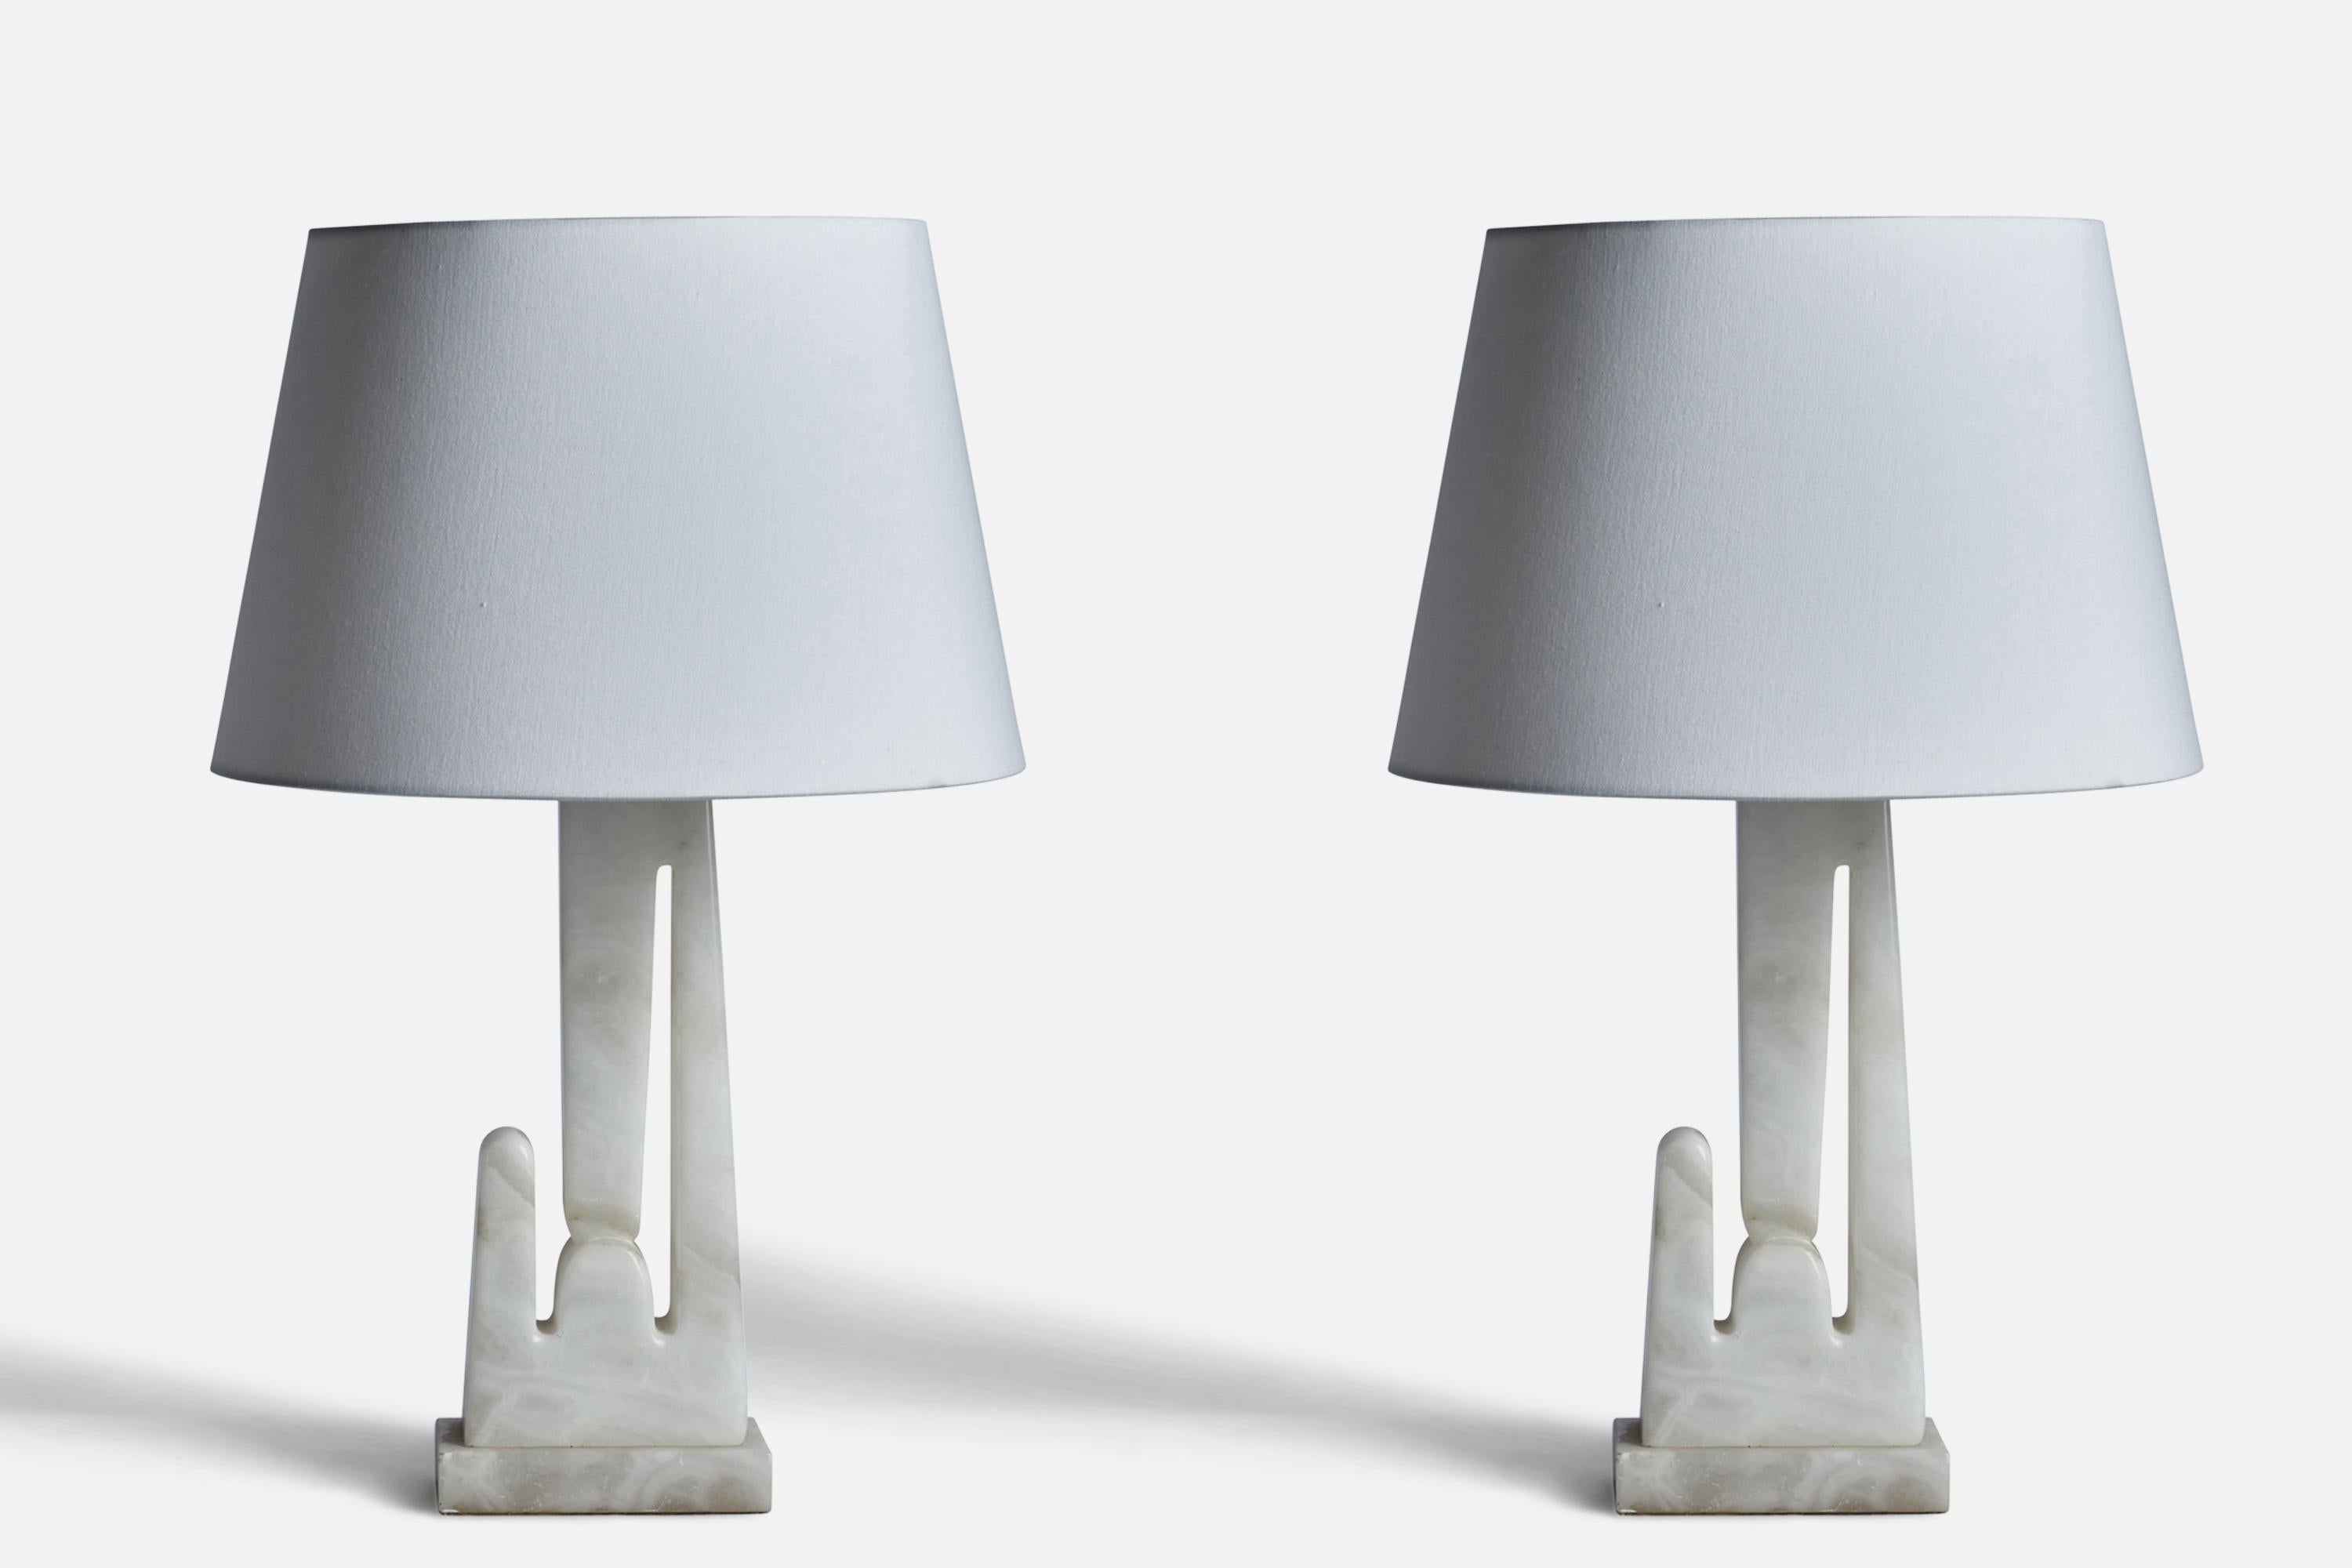 Paire de lampes de table en marbre conçues et produites aux États-Unis, années 1950.

Dimensions de la lampe (pouces) : 18.75